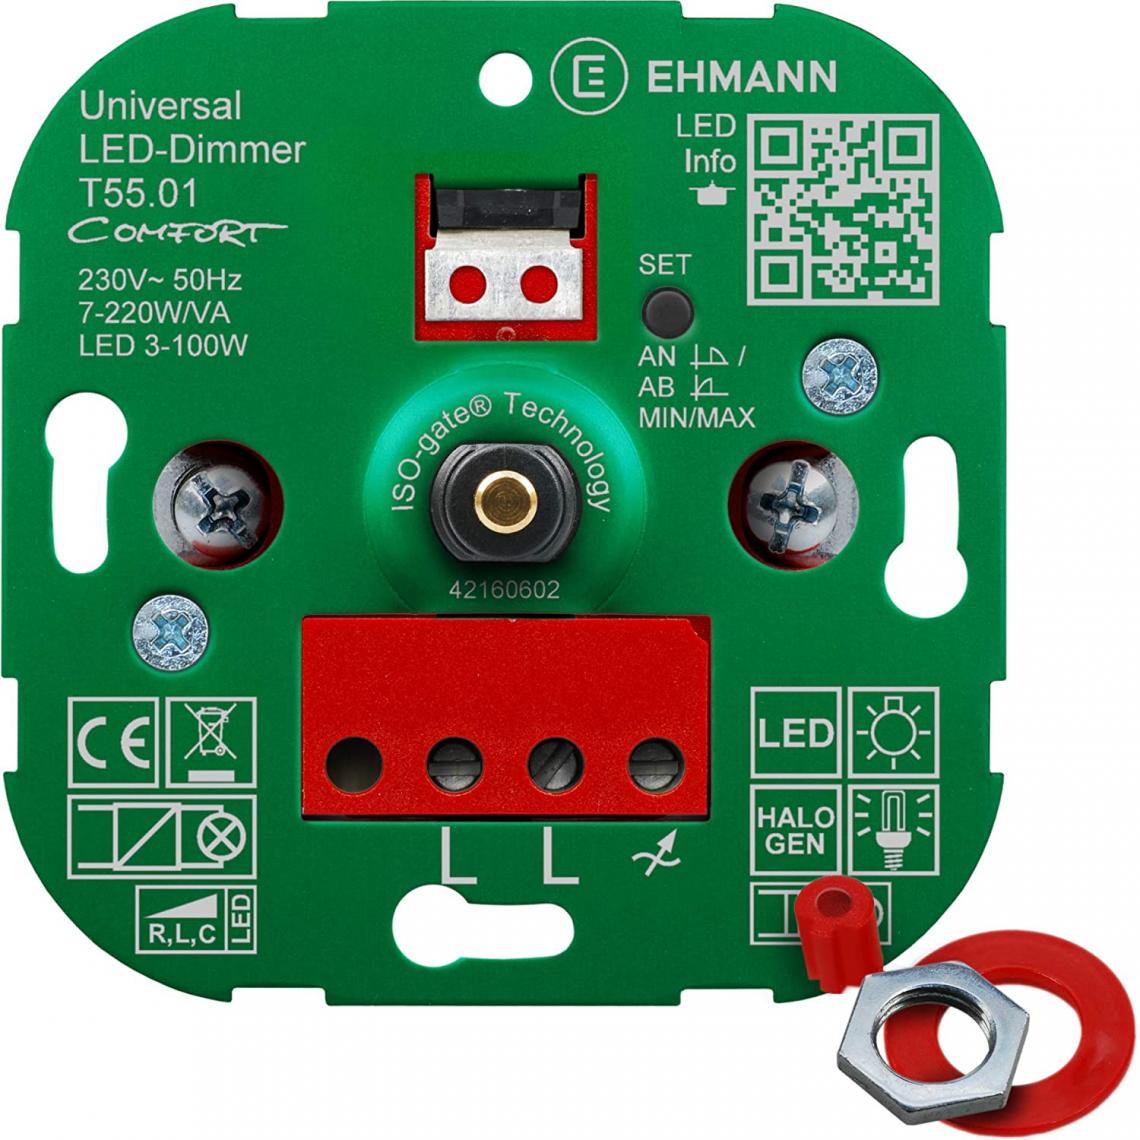 Inconnu - Variateur rotatif Ehmann T55.01 5500x0100 Adapté pour: Lampe LED, Lampe halogène, Ampoule électrique 1 pc(s) - Interrupteurs et prises étanches